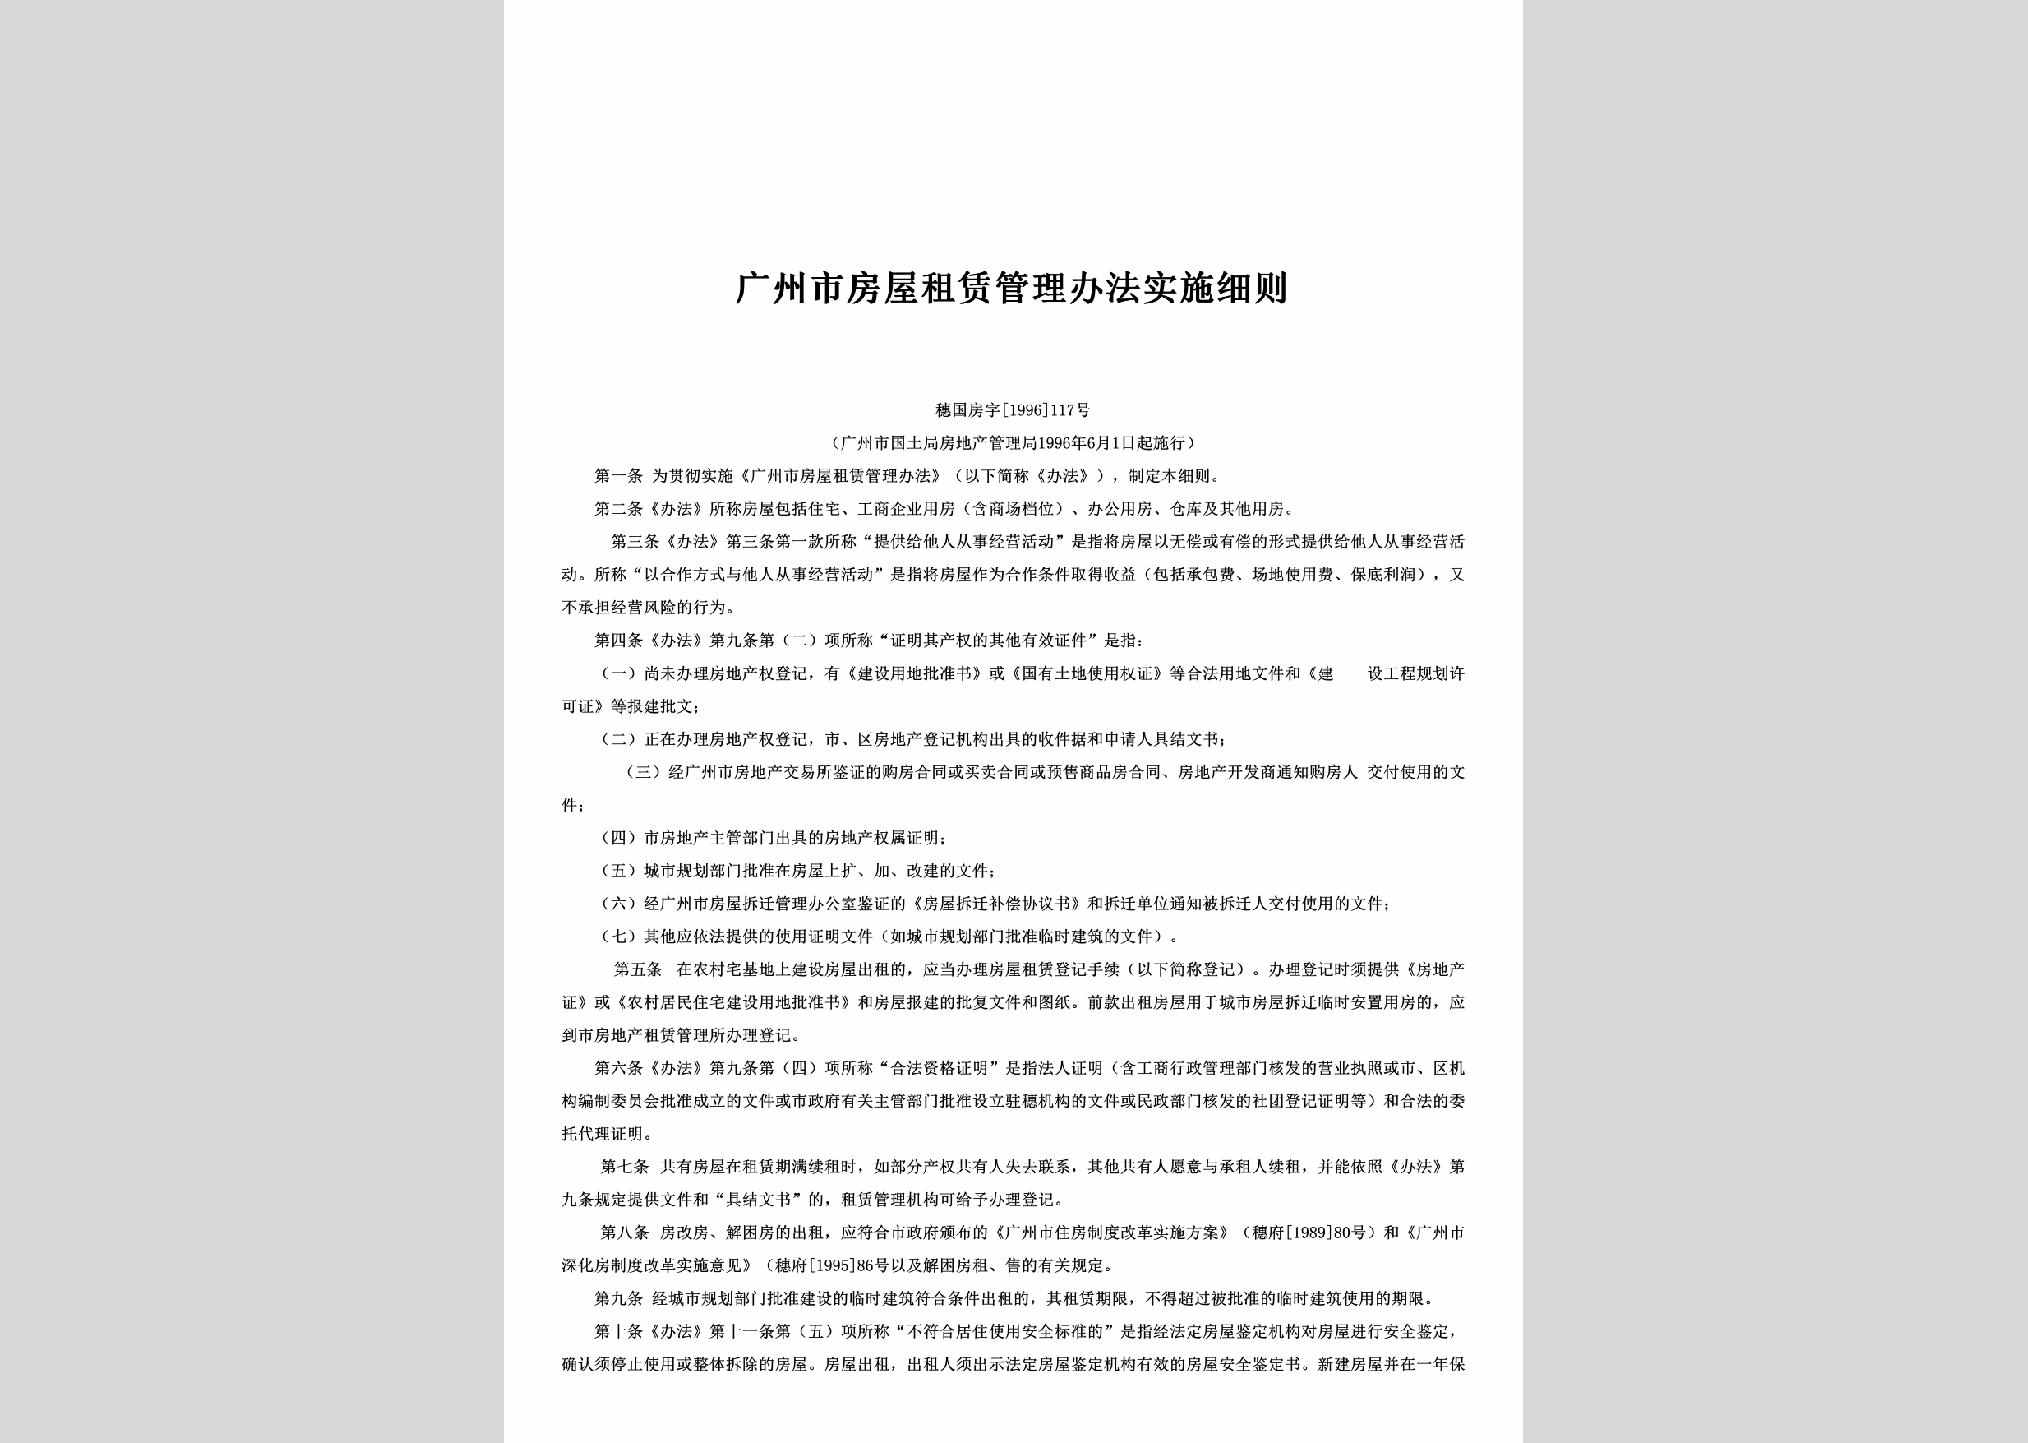 穗国房字[1996]117号：广州市房屋租赁管理办法实施细则